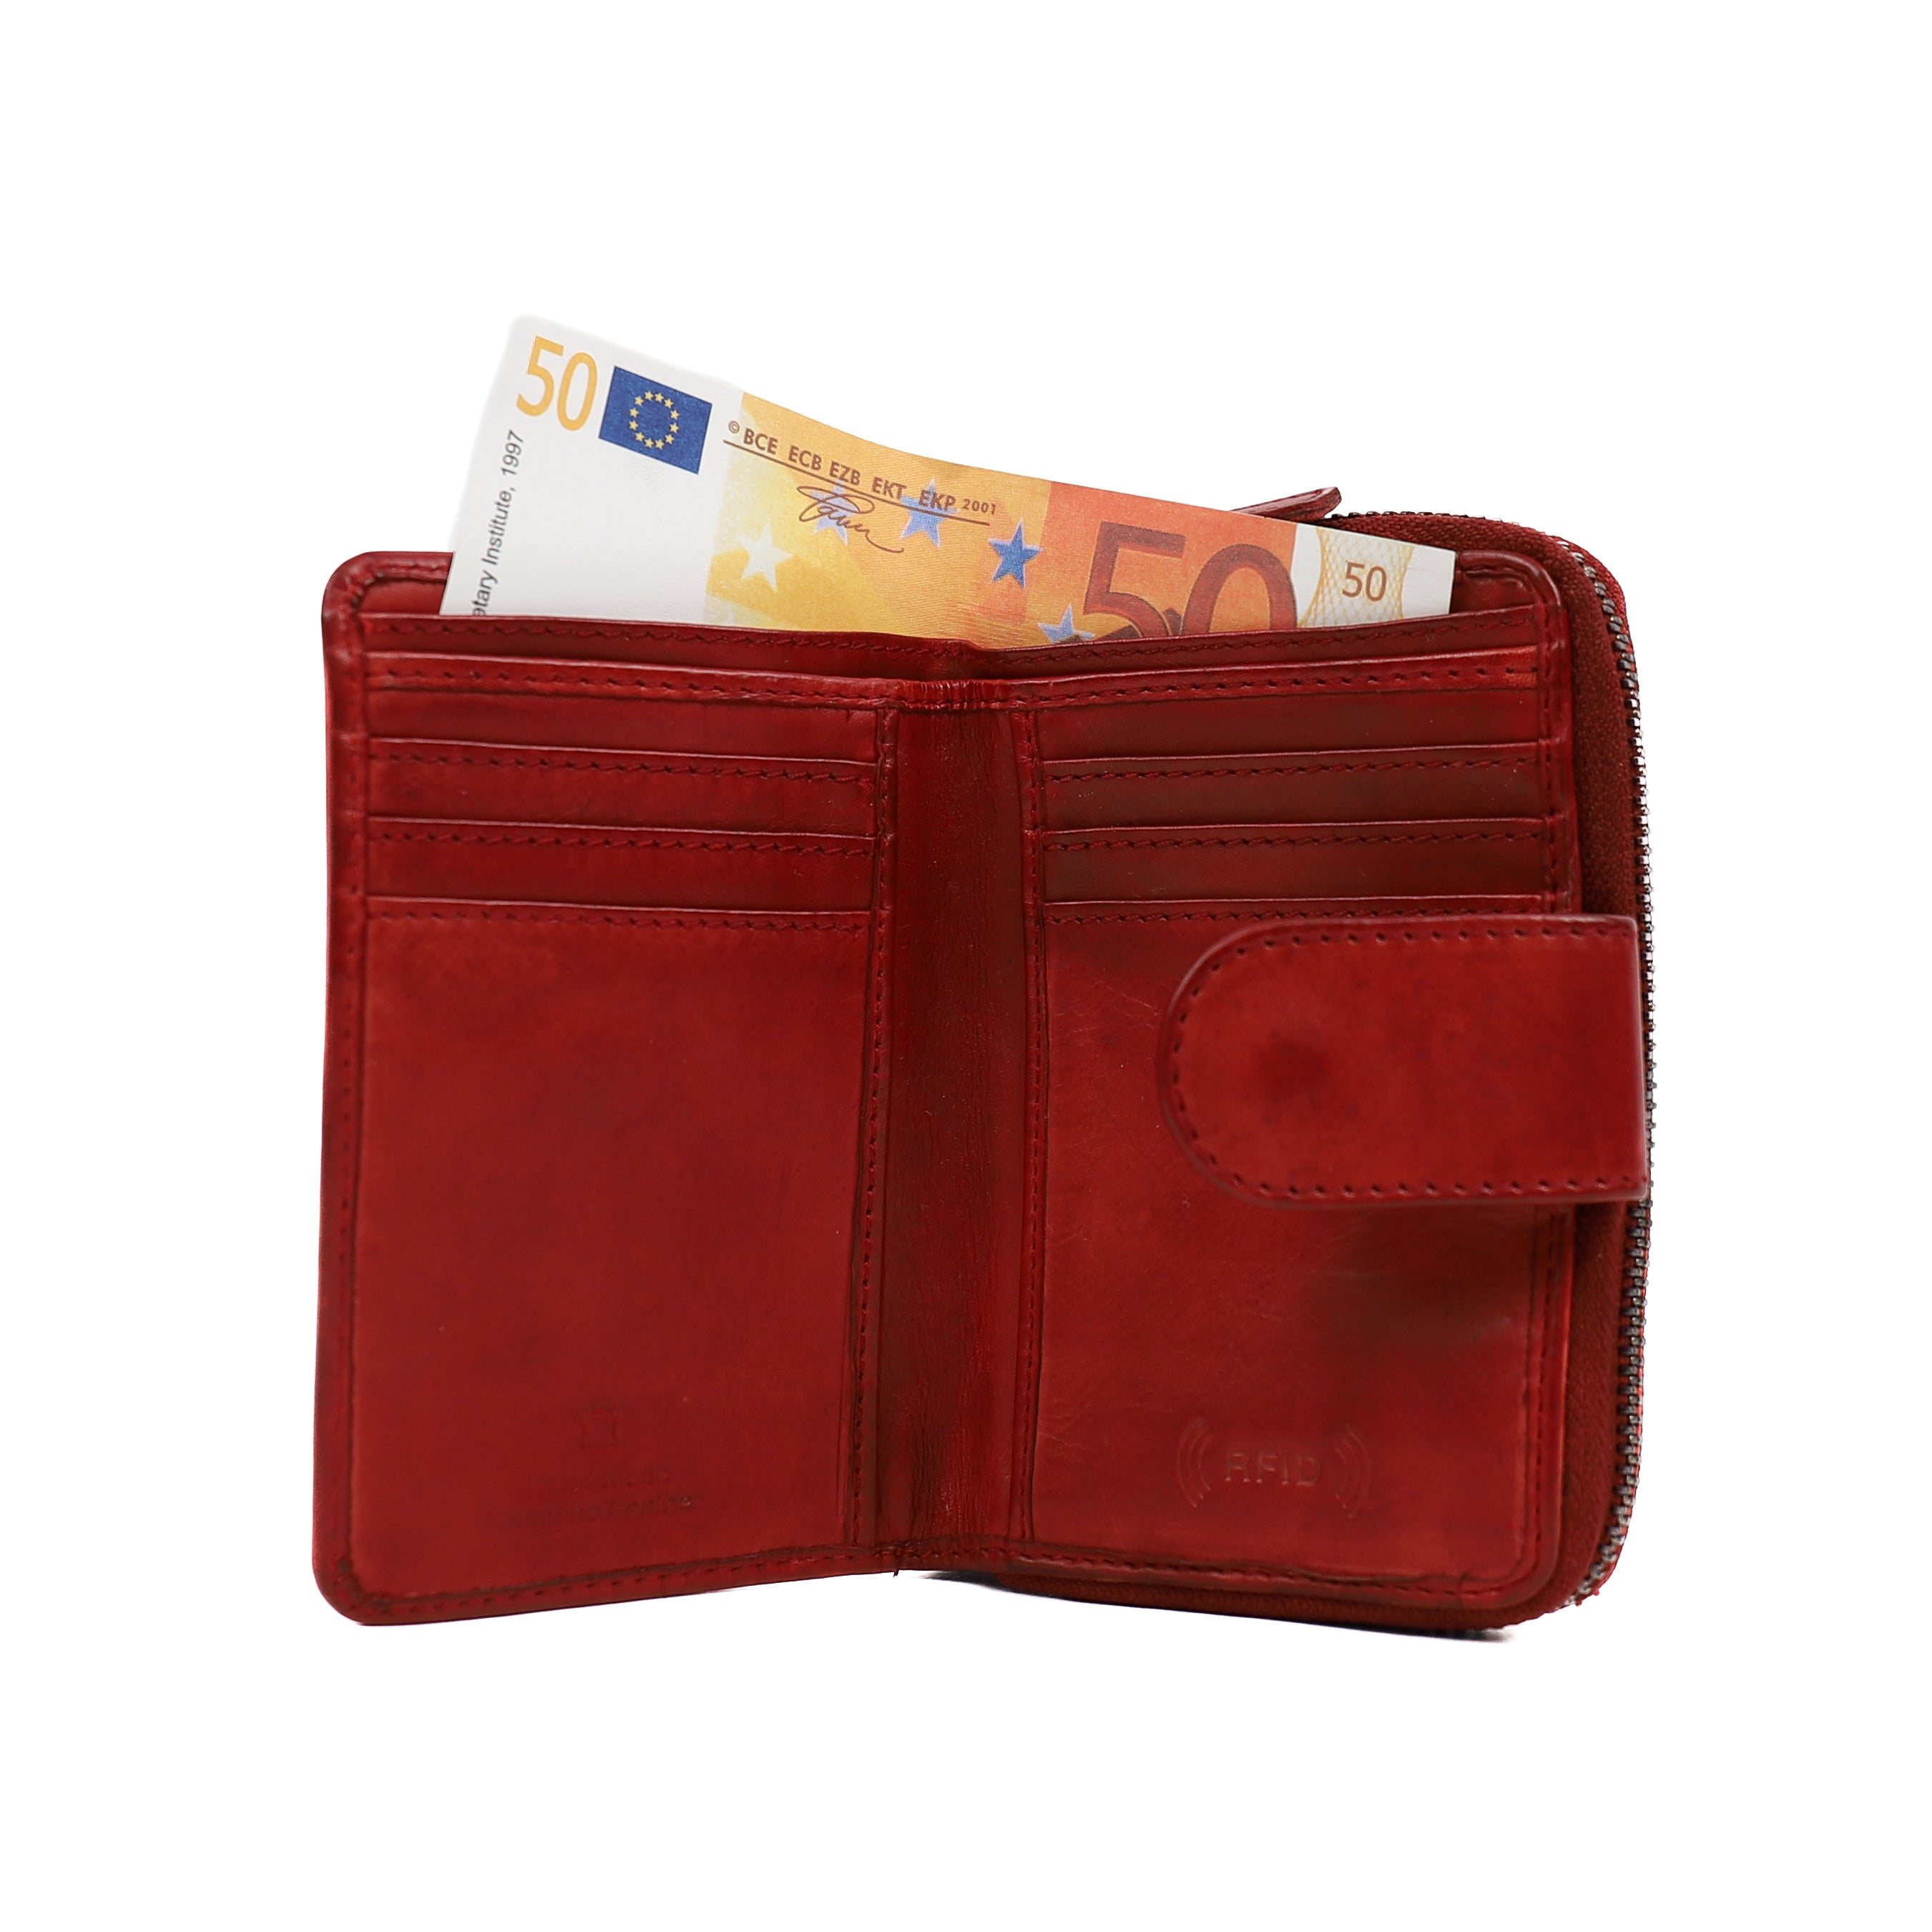 Reißverschluss-Geldbörse 'Loet' rot - CL 13550